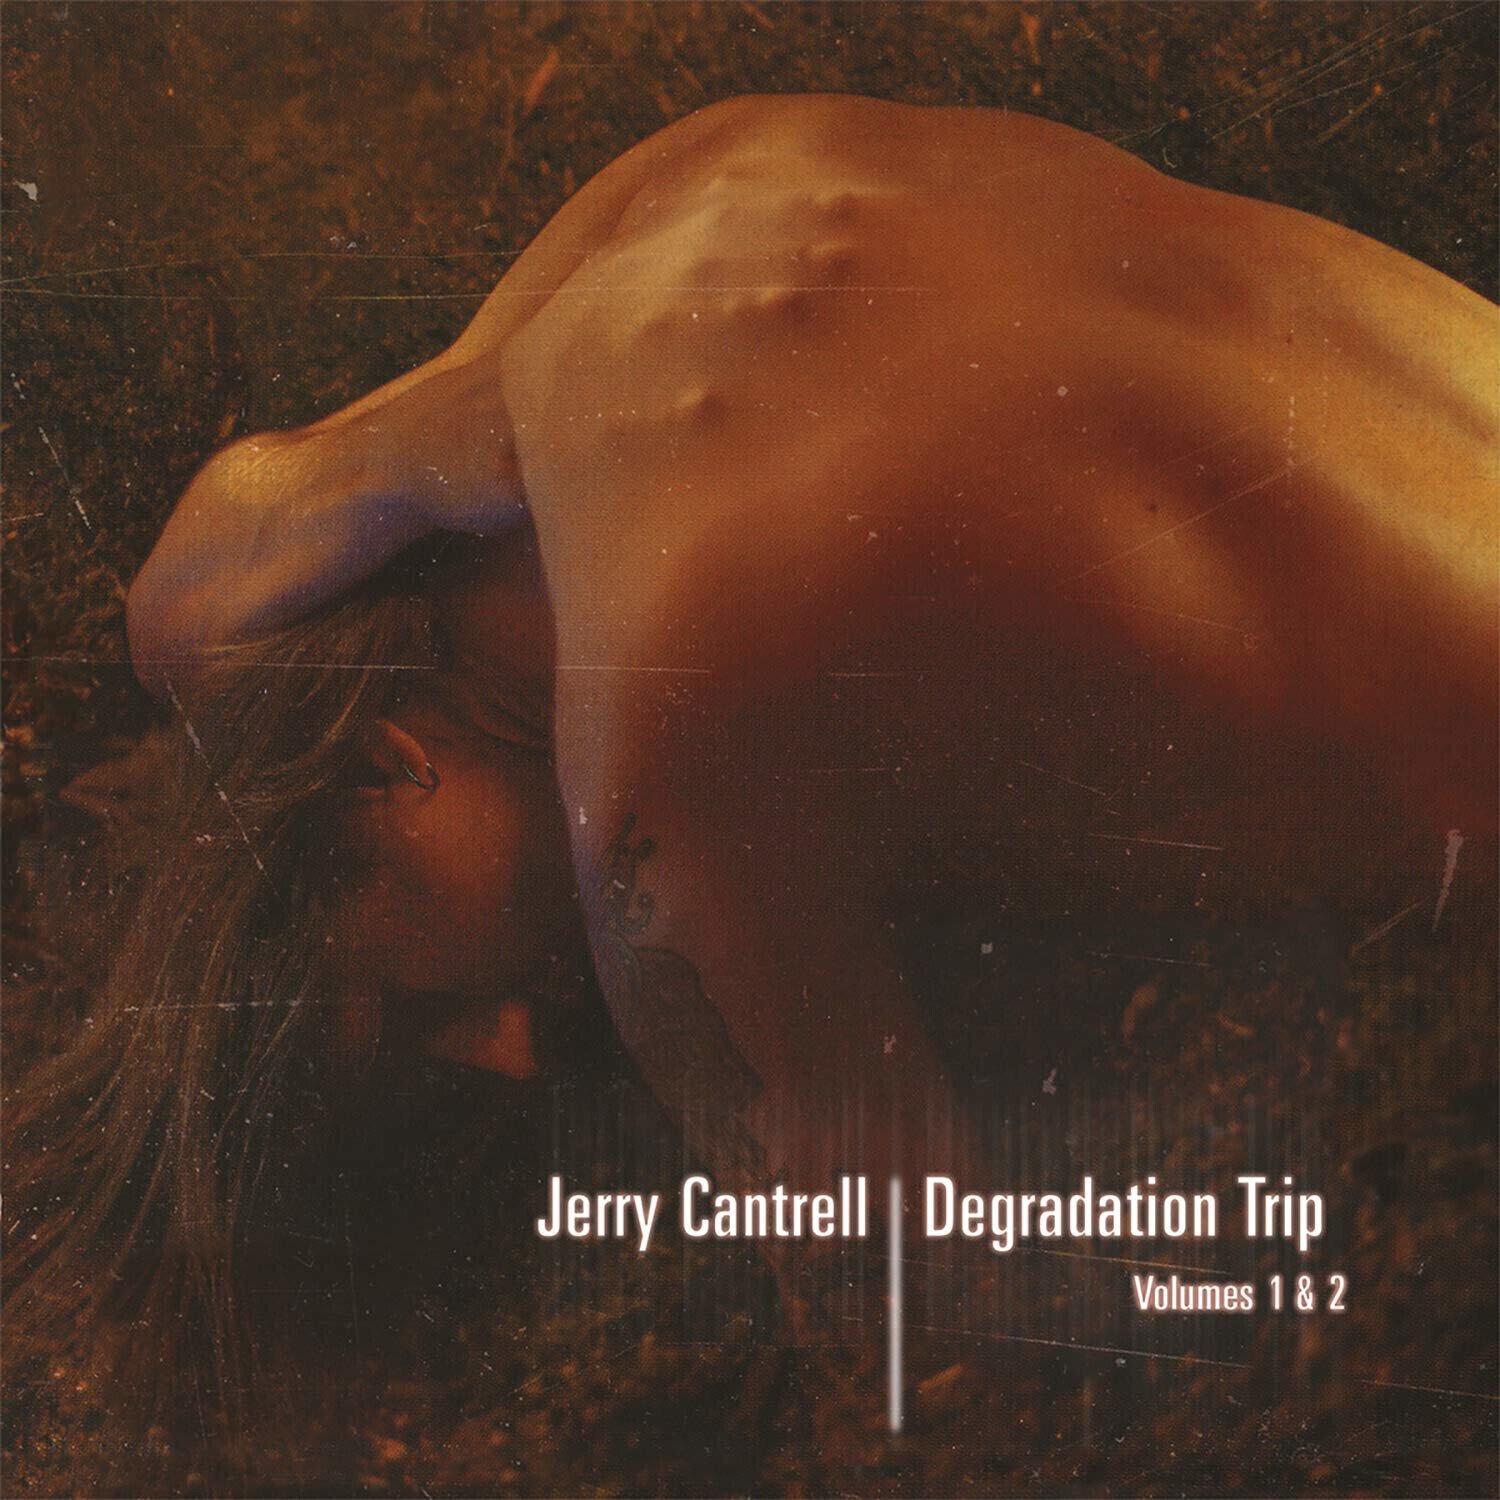 Vinylplade Jerry Cantrell - Degradation Trip 1&2 (4 LP)